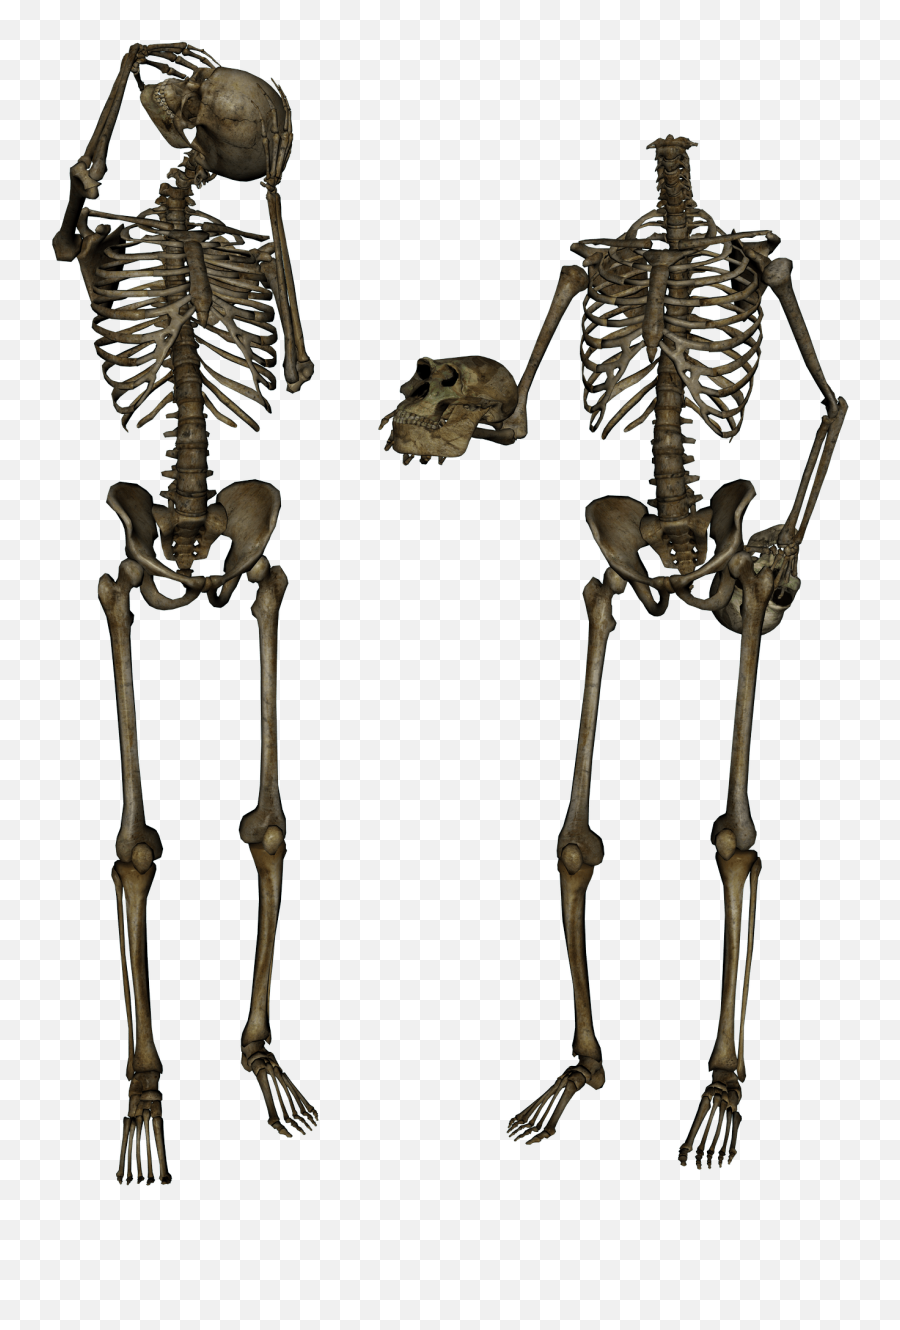 Download Skeleton Png Image Hq Freepngimg - Transparent Skeletons Png,Skeleton Png Transparent